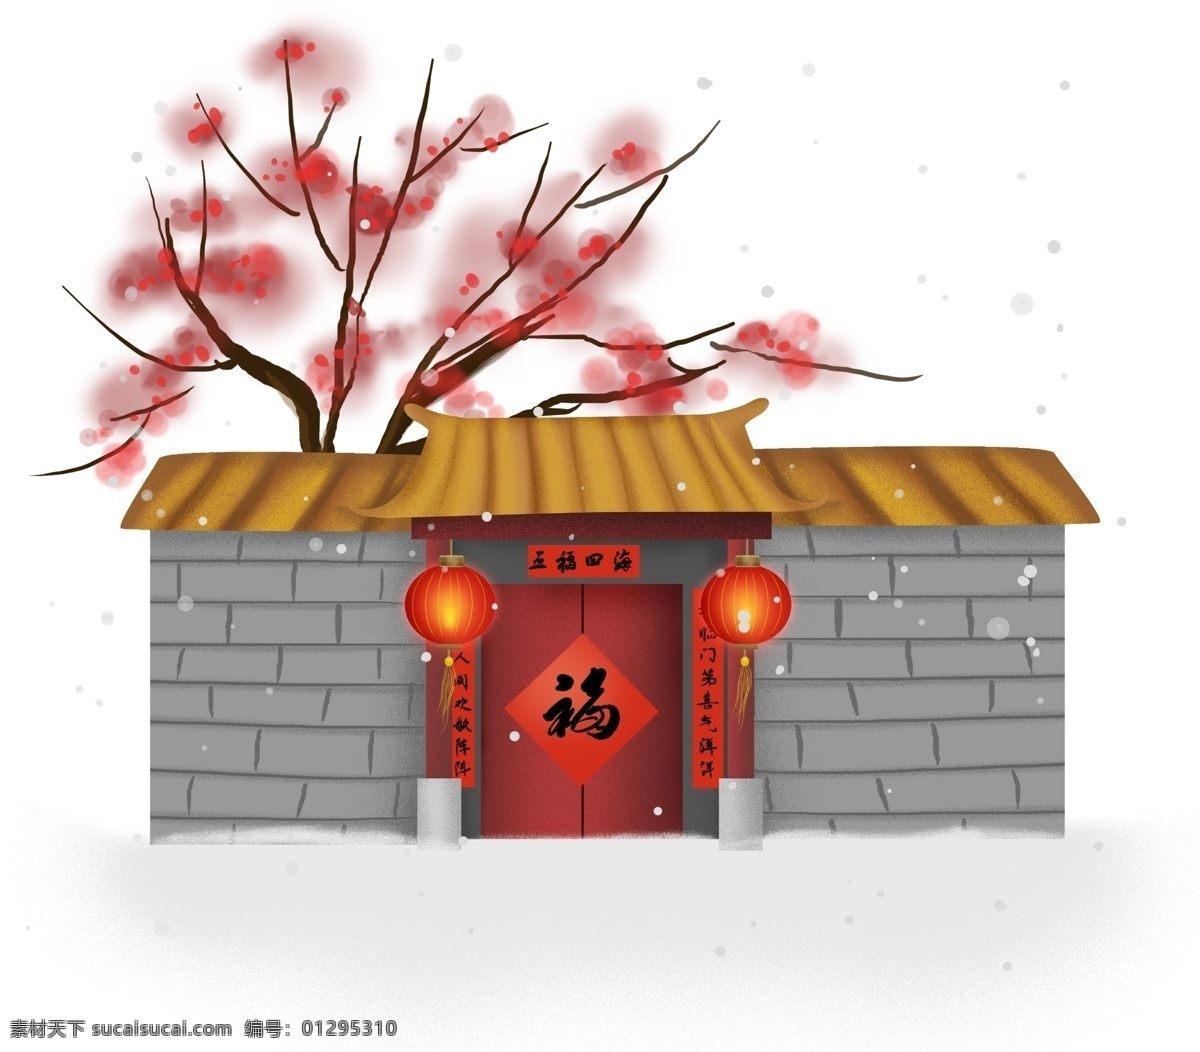 中国 风 新年 传统 中式 大门 中国风 古风 梅花 梅树 梅花树 灯笼 福字 对联 贴对联 中式大门 红灯笼 雪地 过年